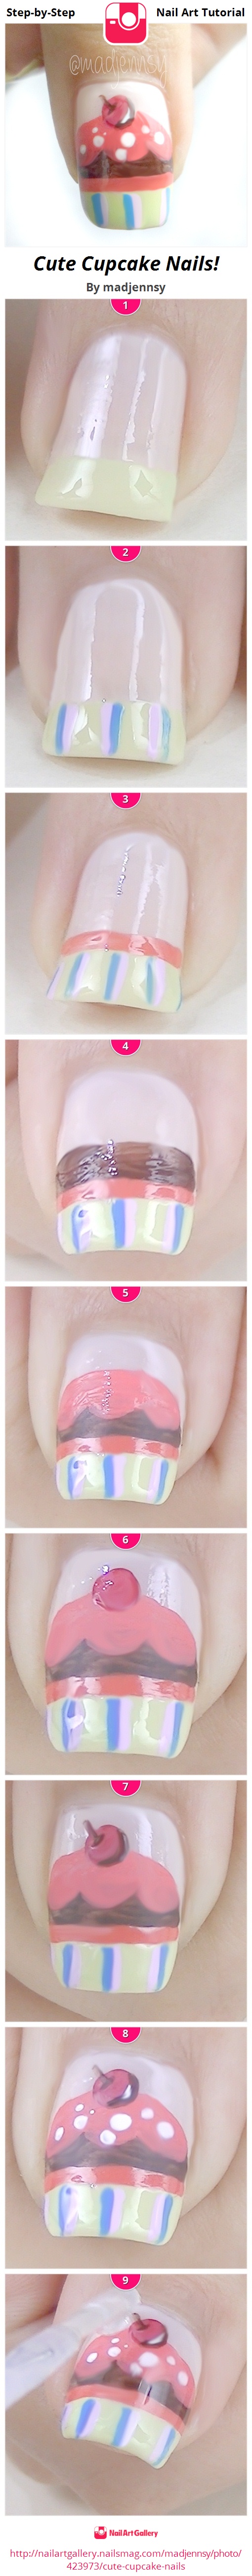 Cute Cupcake Nails! - Nail Art Gallery